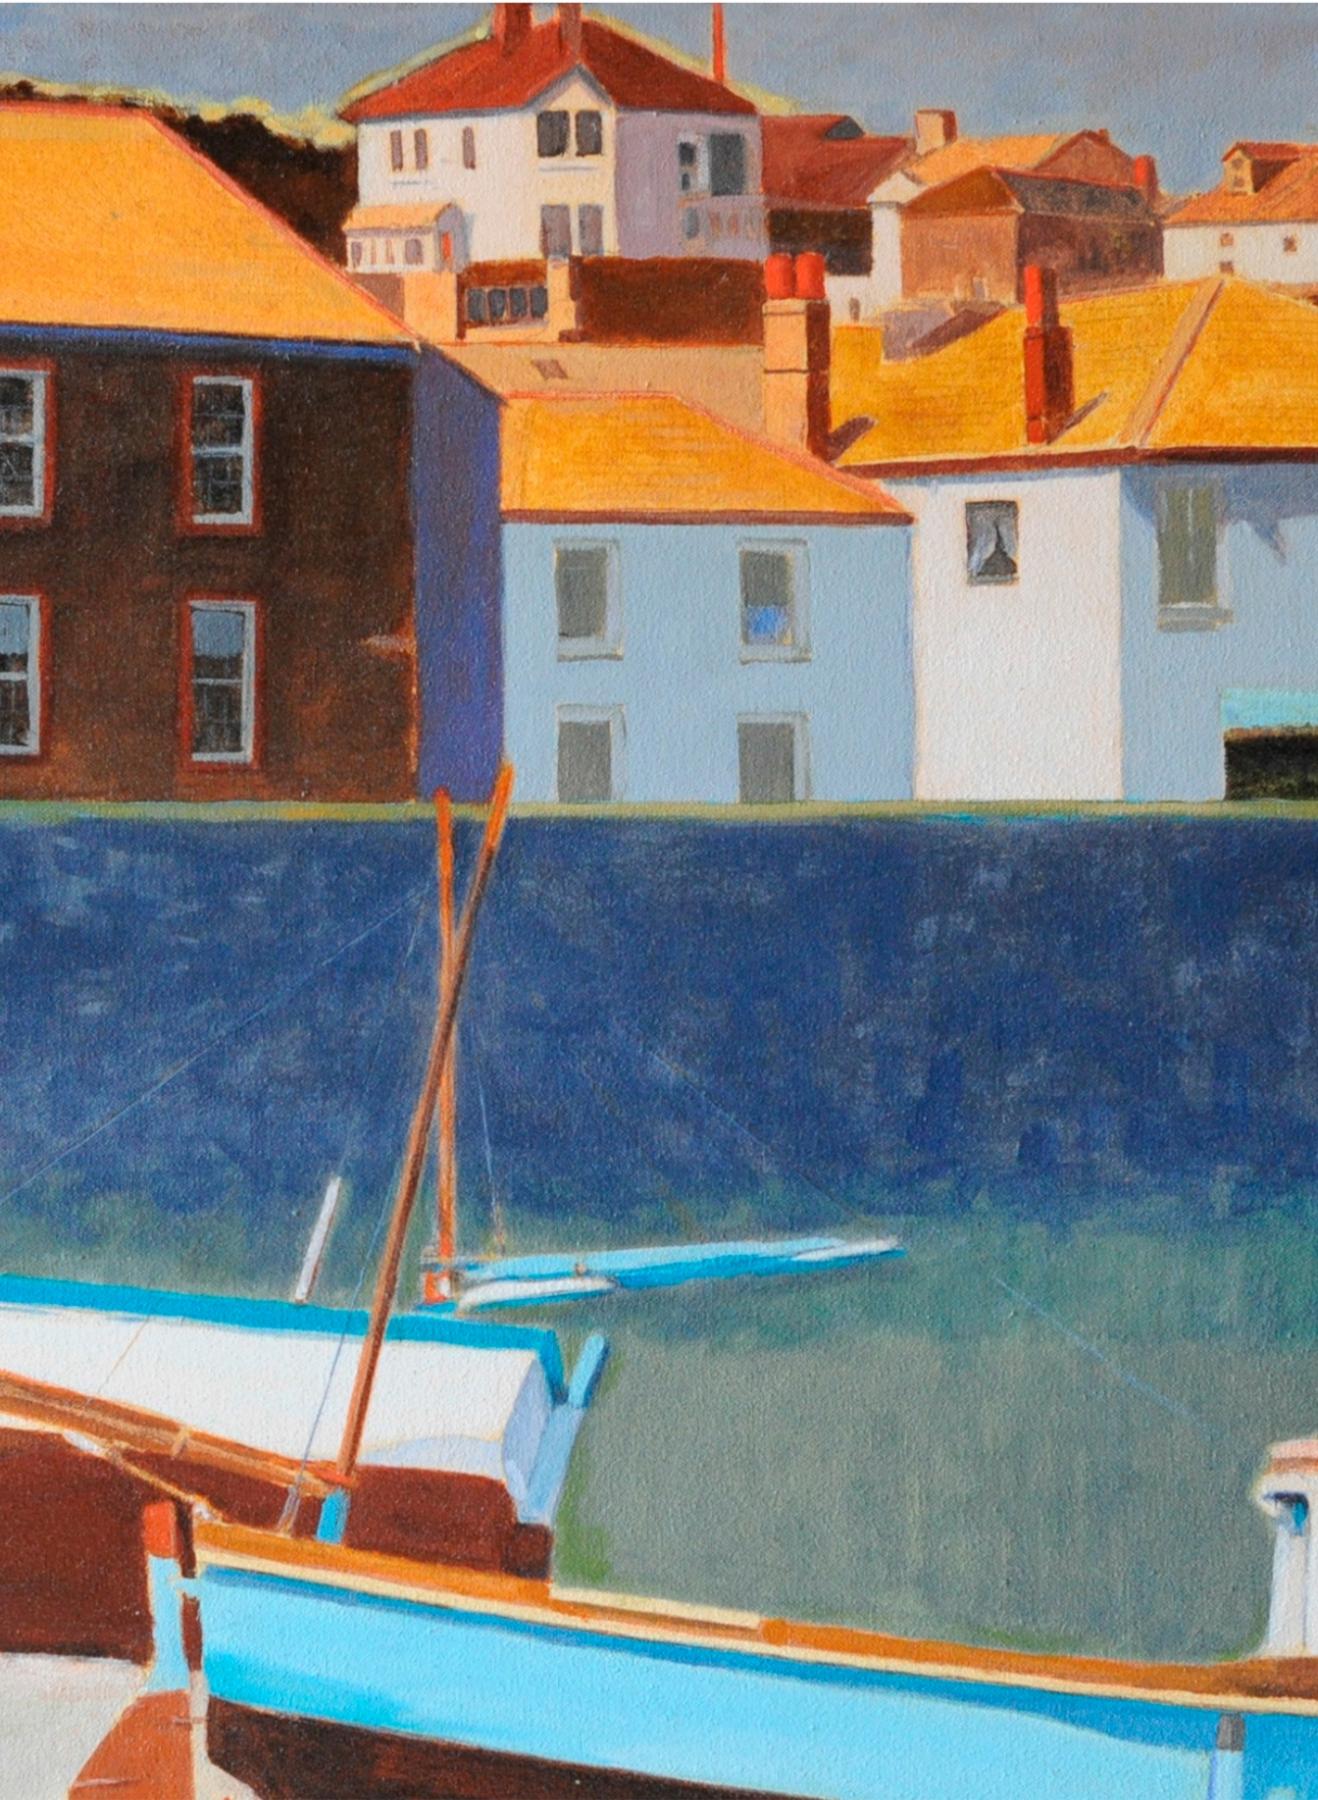 Image for entry 'Cornish Coast'